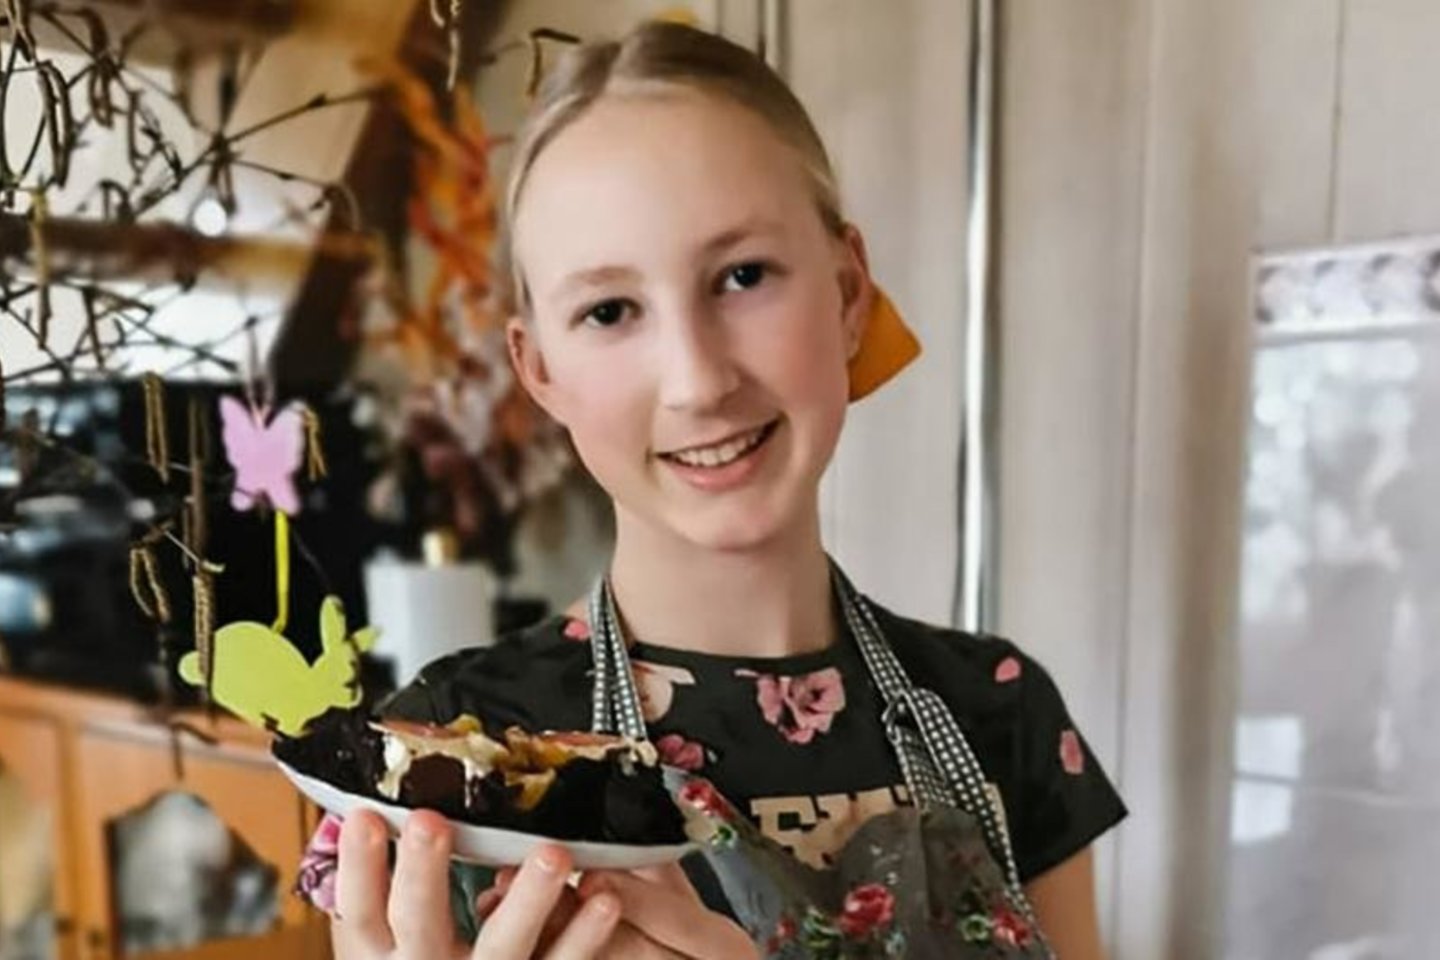 Pyragus Justė viena pati kepa jau nuo 8-erių, o dabar praktikuojasi gamindama tortus.<br>Nuotr. iš zemaiciolaikrastis.lt.